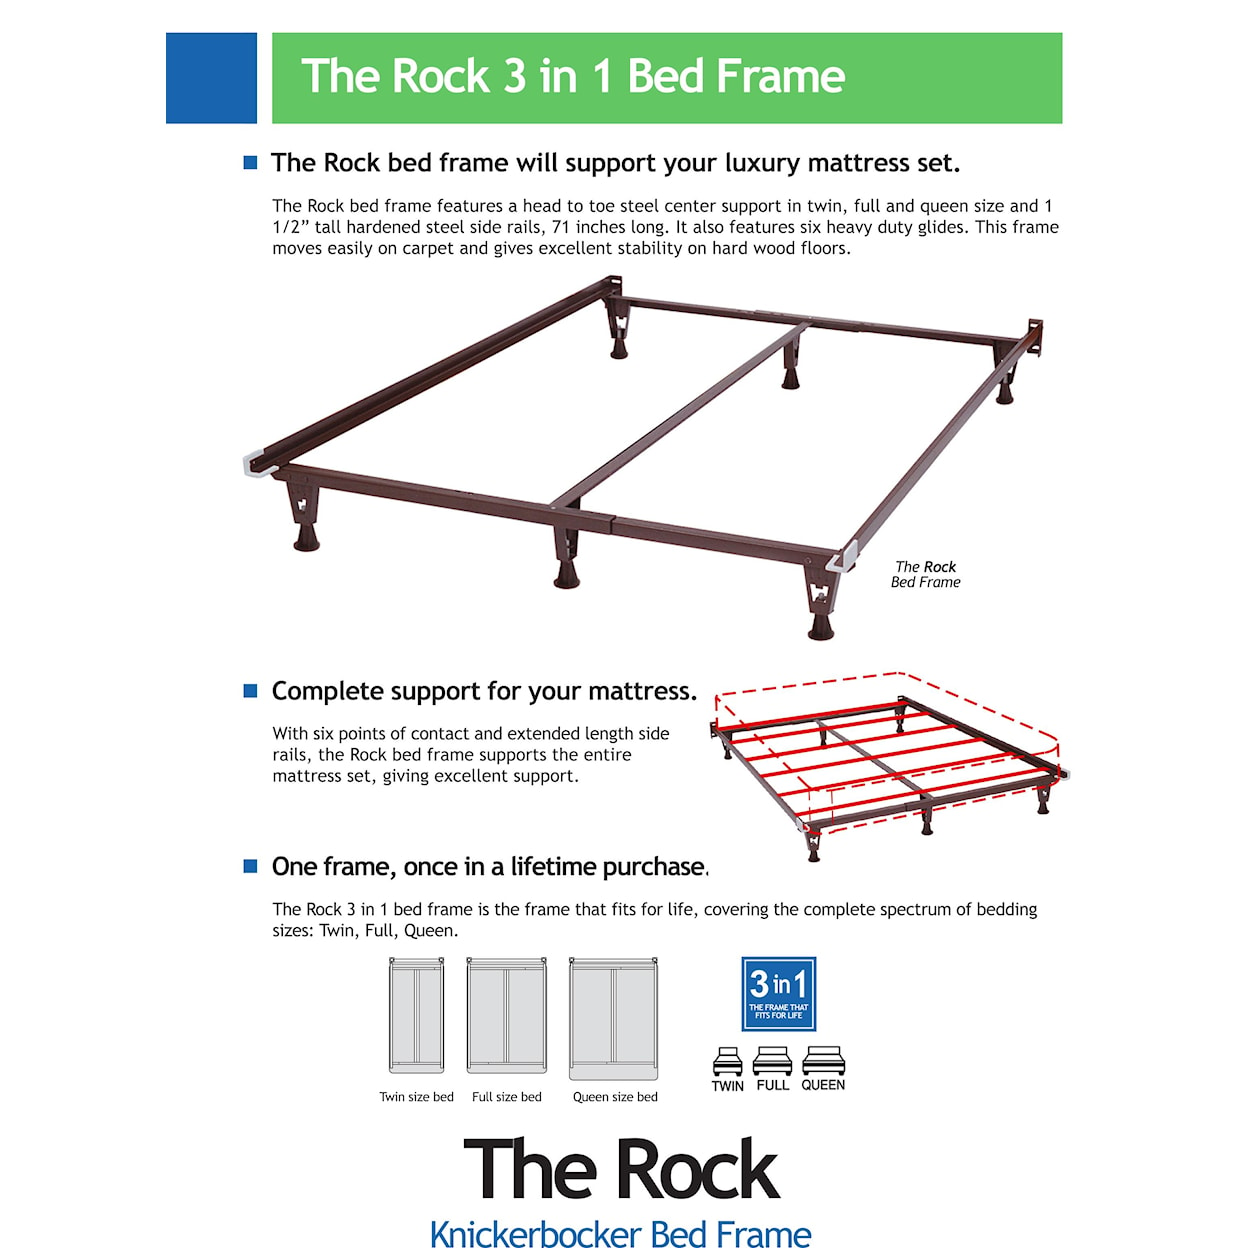 Knickerbocker Bed Frames The Rock Bed Frame